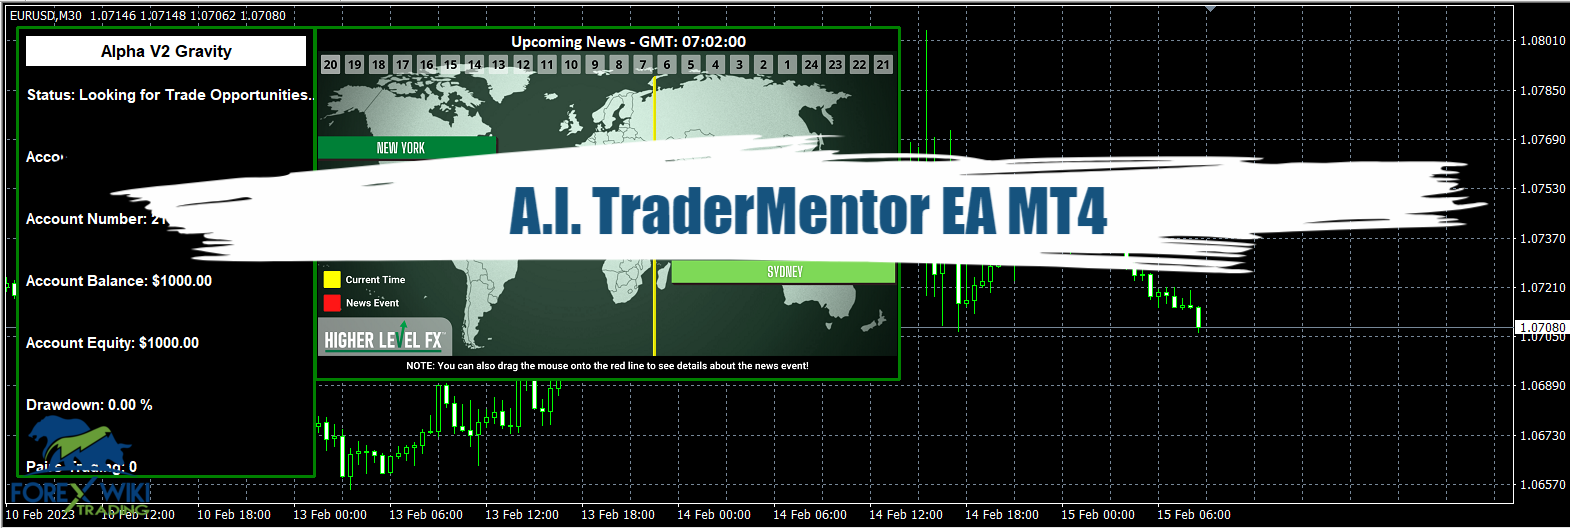 A.I. TraderMentor EA MT4 - Free Download 45